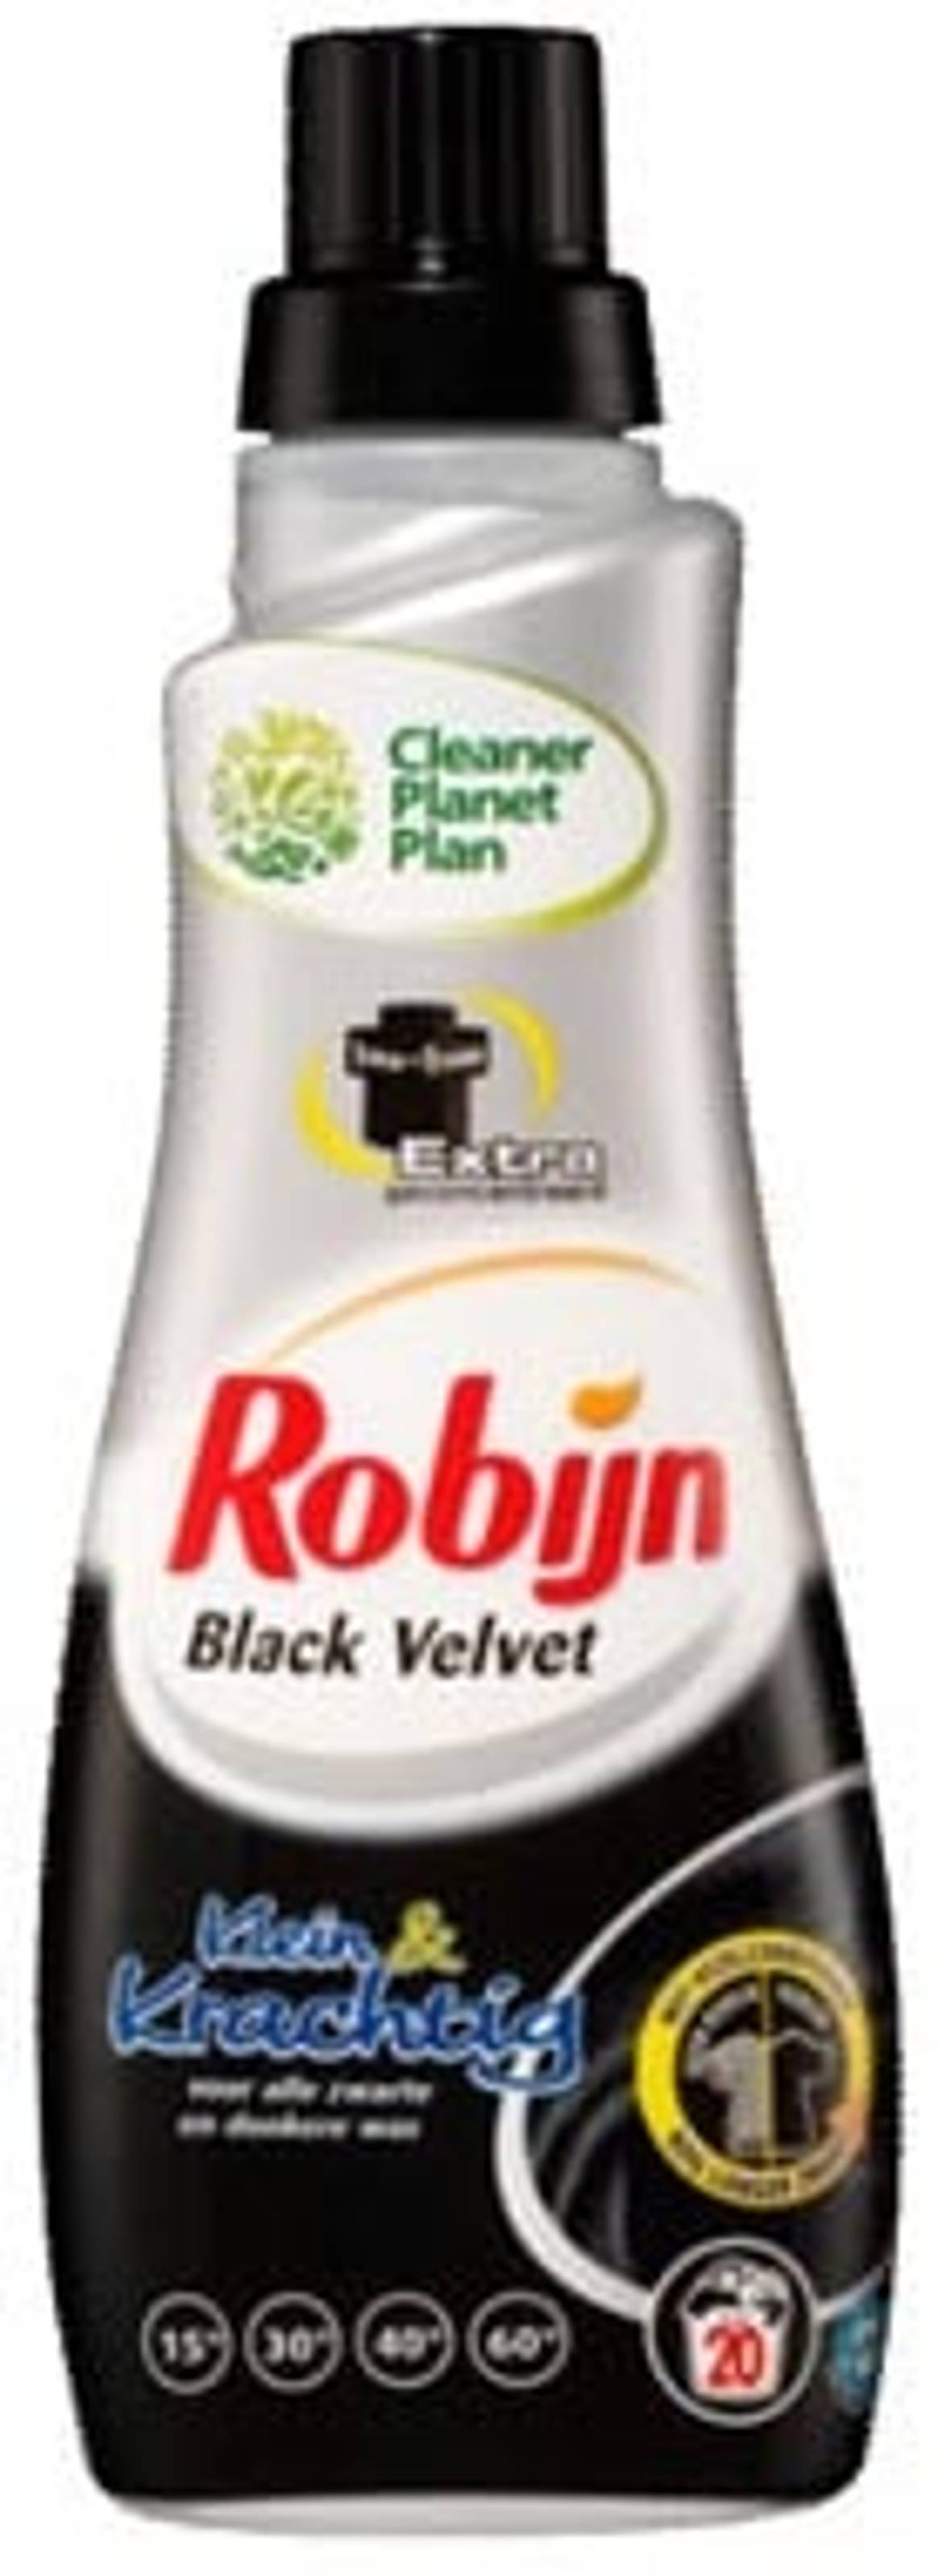 Met Robijn Black Velvet komt ook je mooie donkere kleding de winter door!